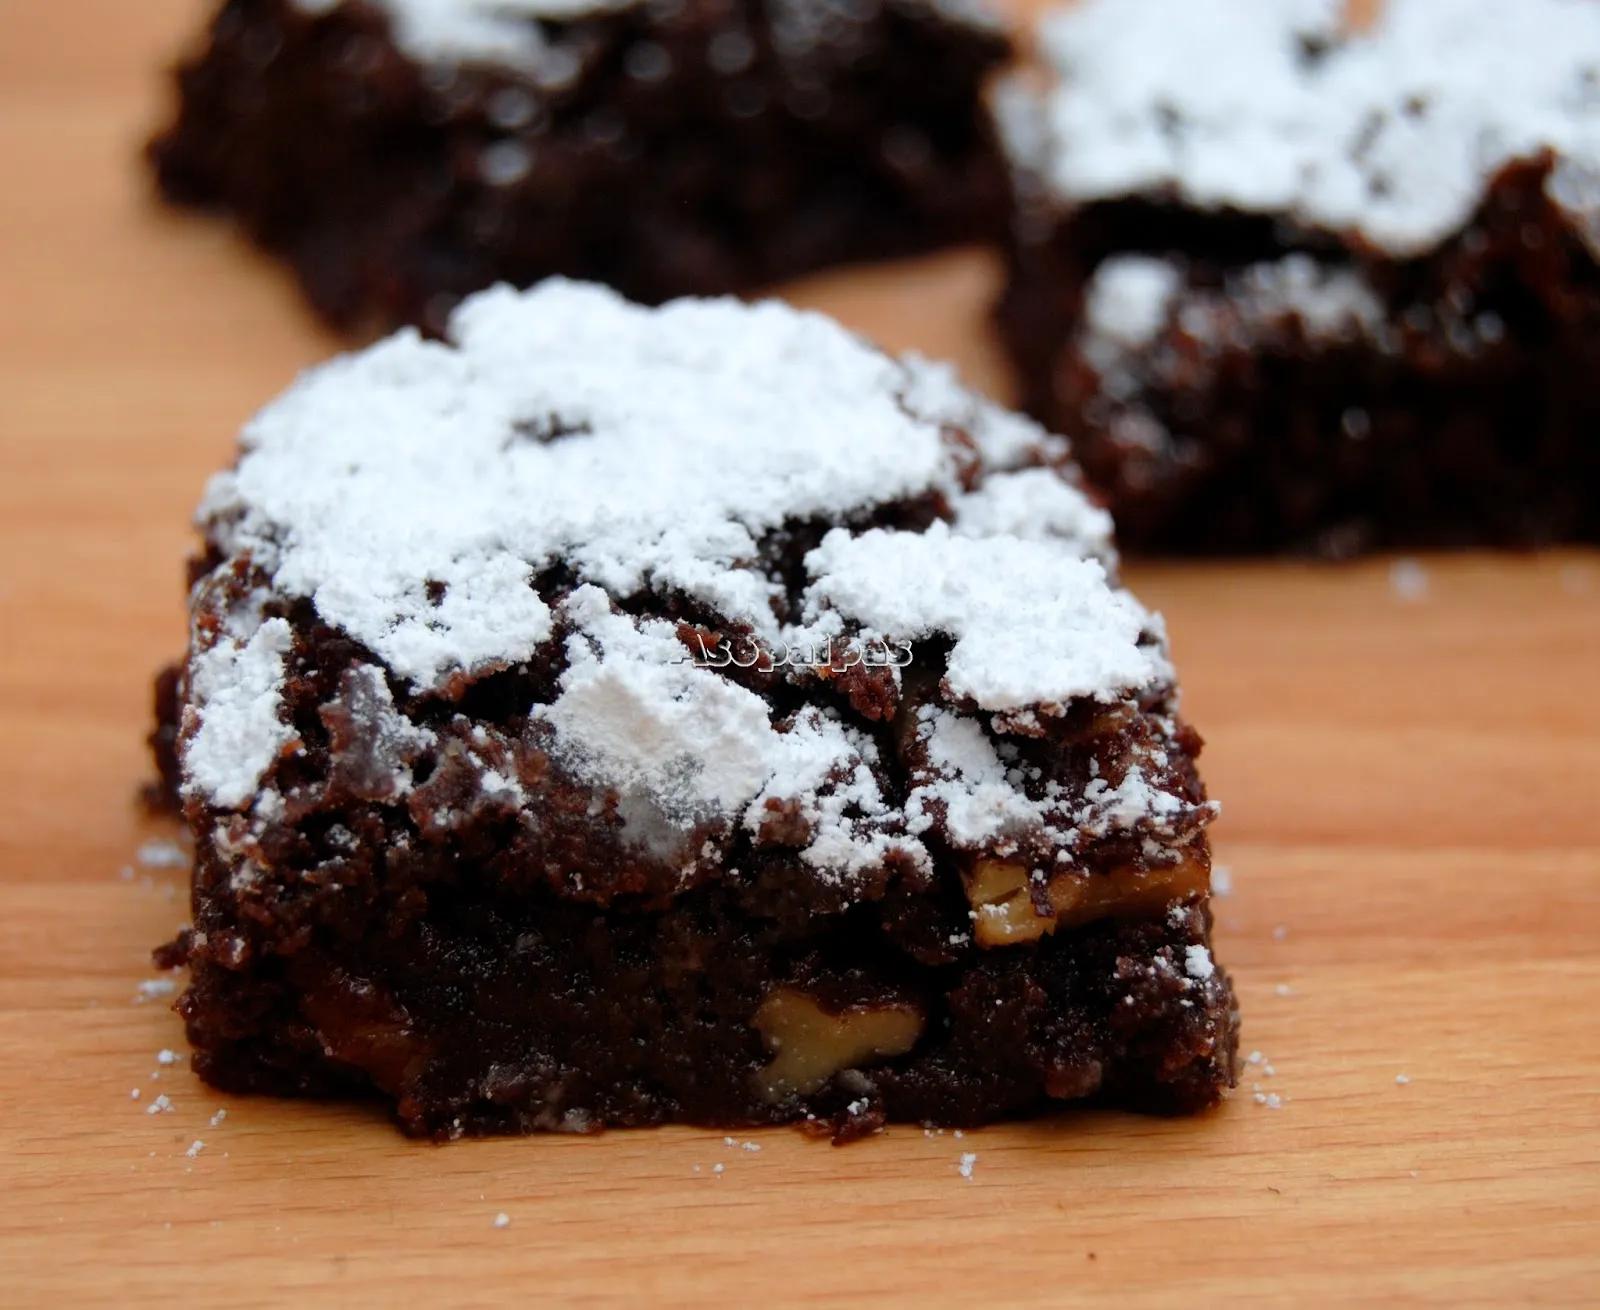 Brownies con Pecanas (Pecan Brownies) Receta | Asopaipas. Recetas de ...